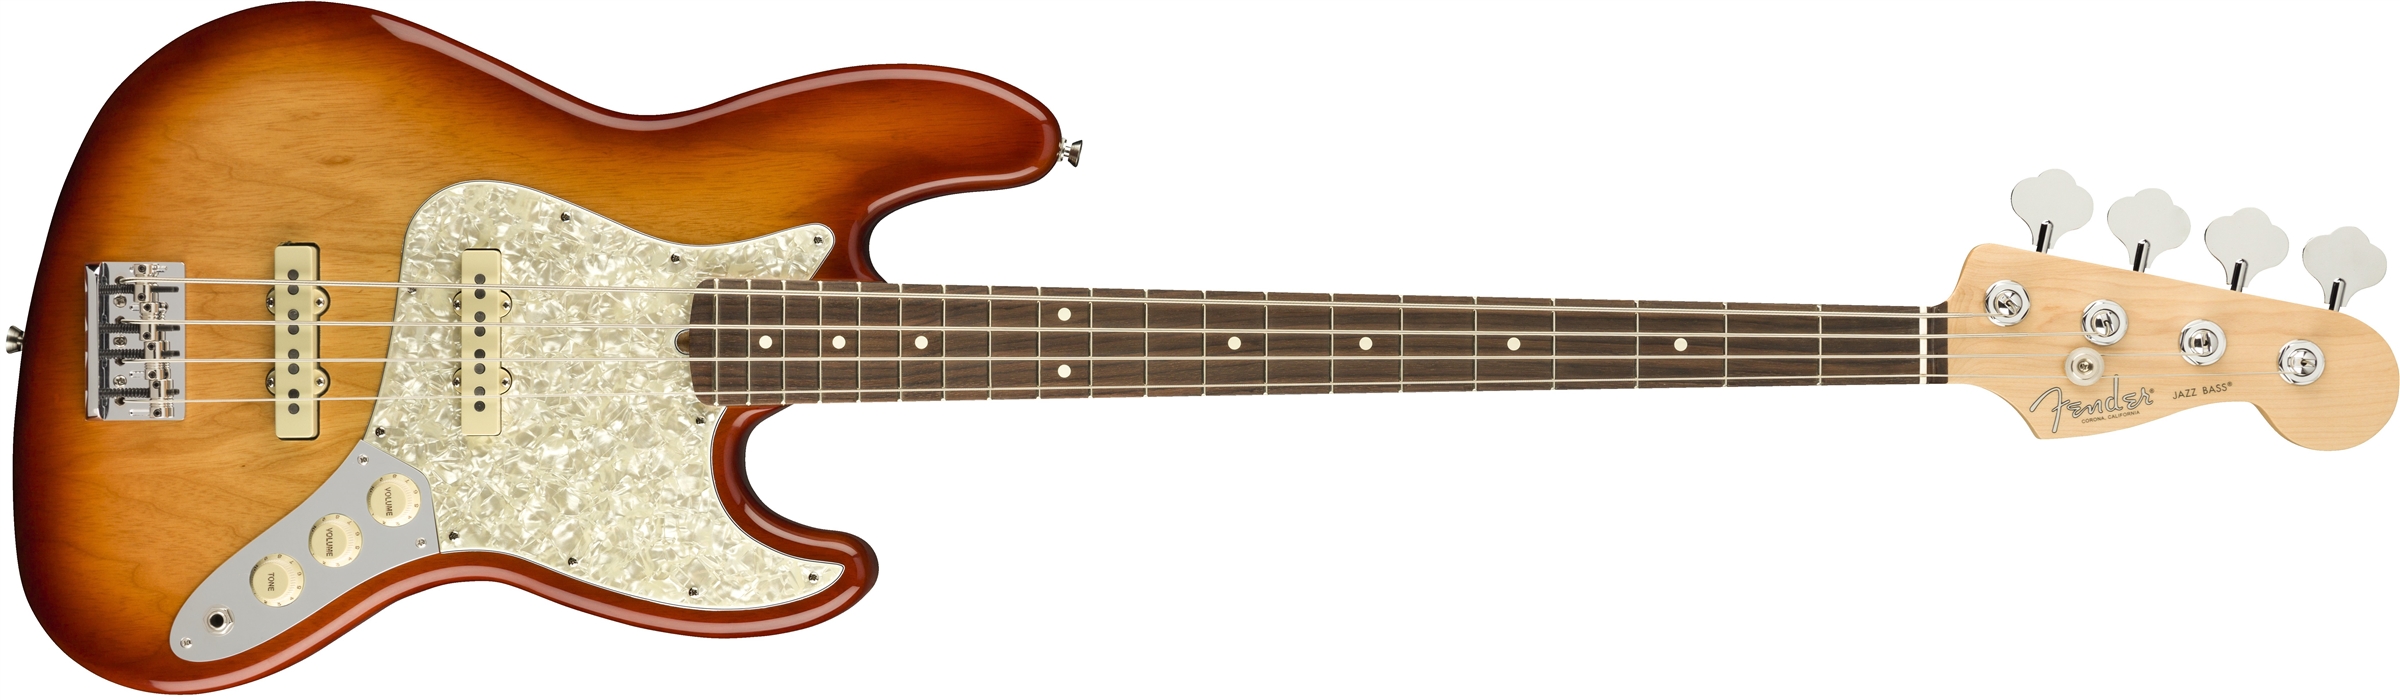 Fender Lightweight Ash American Professional Jazz Bass